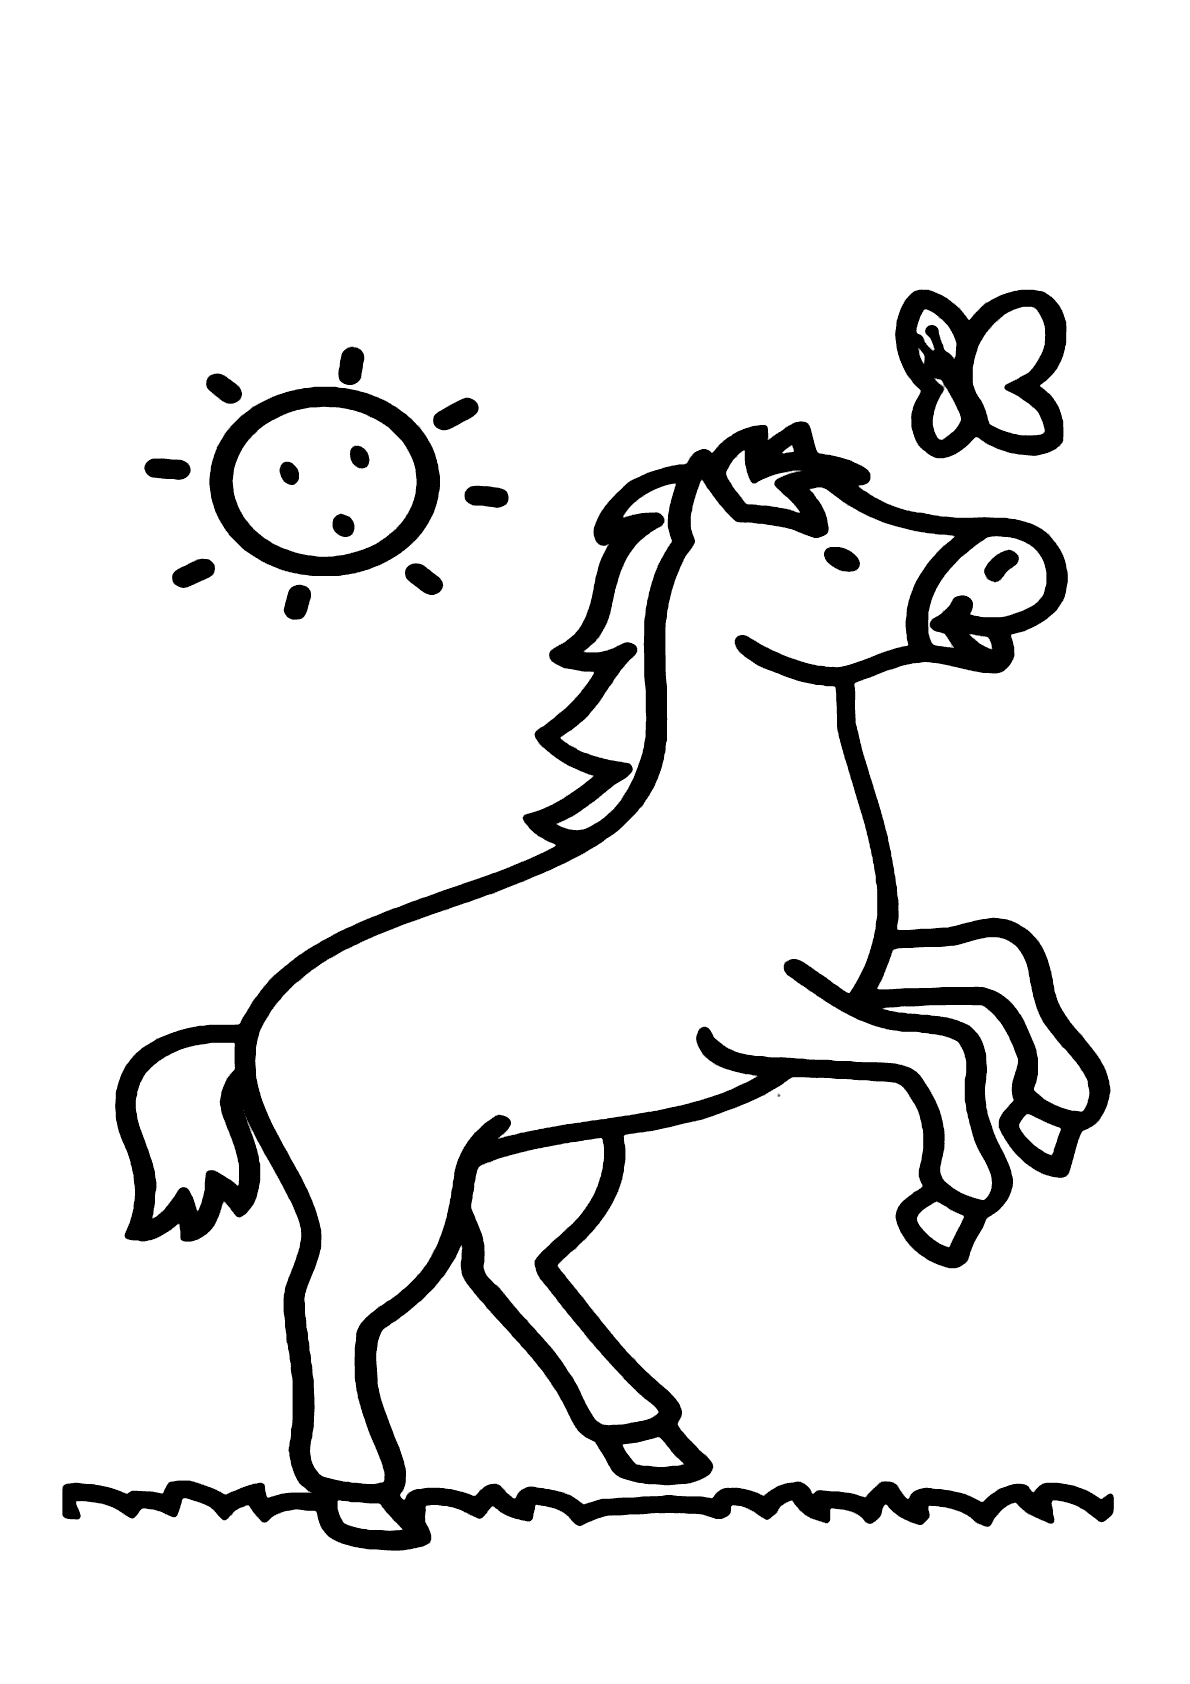 Cavalo e borboletinha para colorir - Imprimir Desenhos